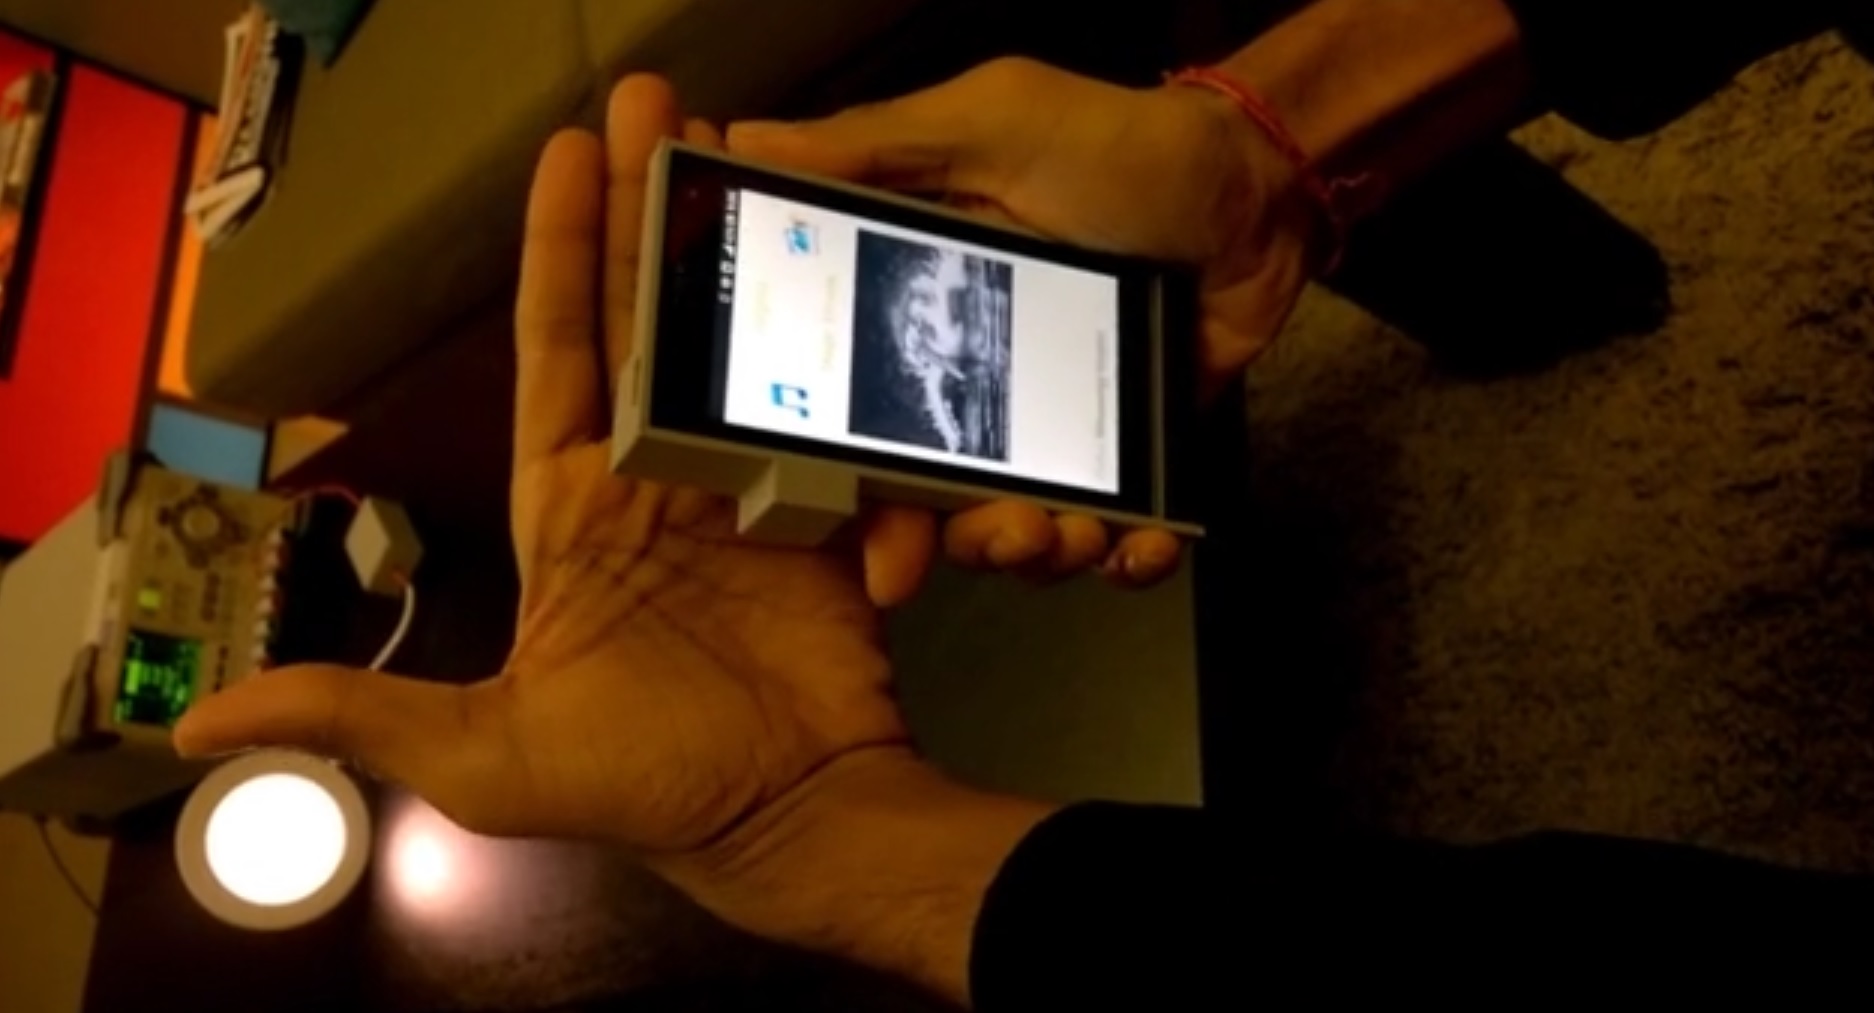 Forkser Deepak Solanki demonstrerer hvordan datastrømmen stopper når han legger hånda foran lyset.